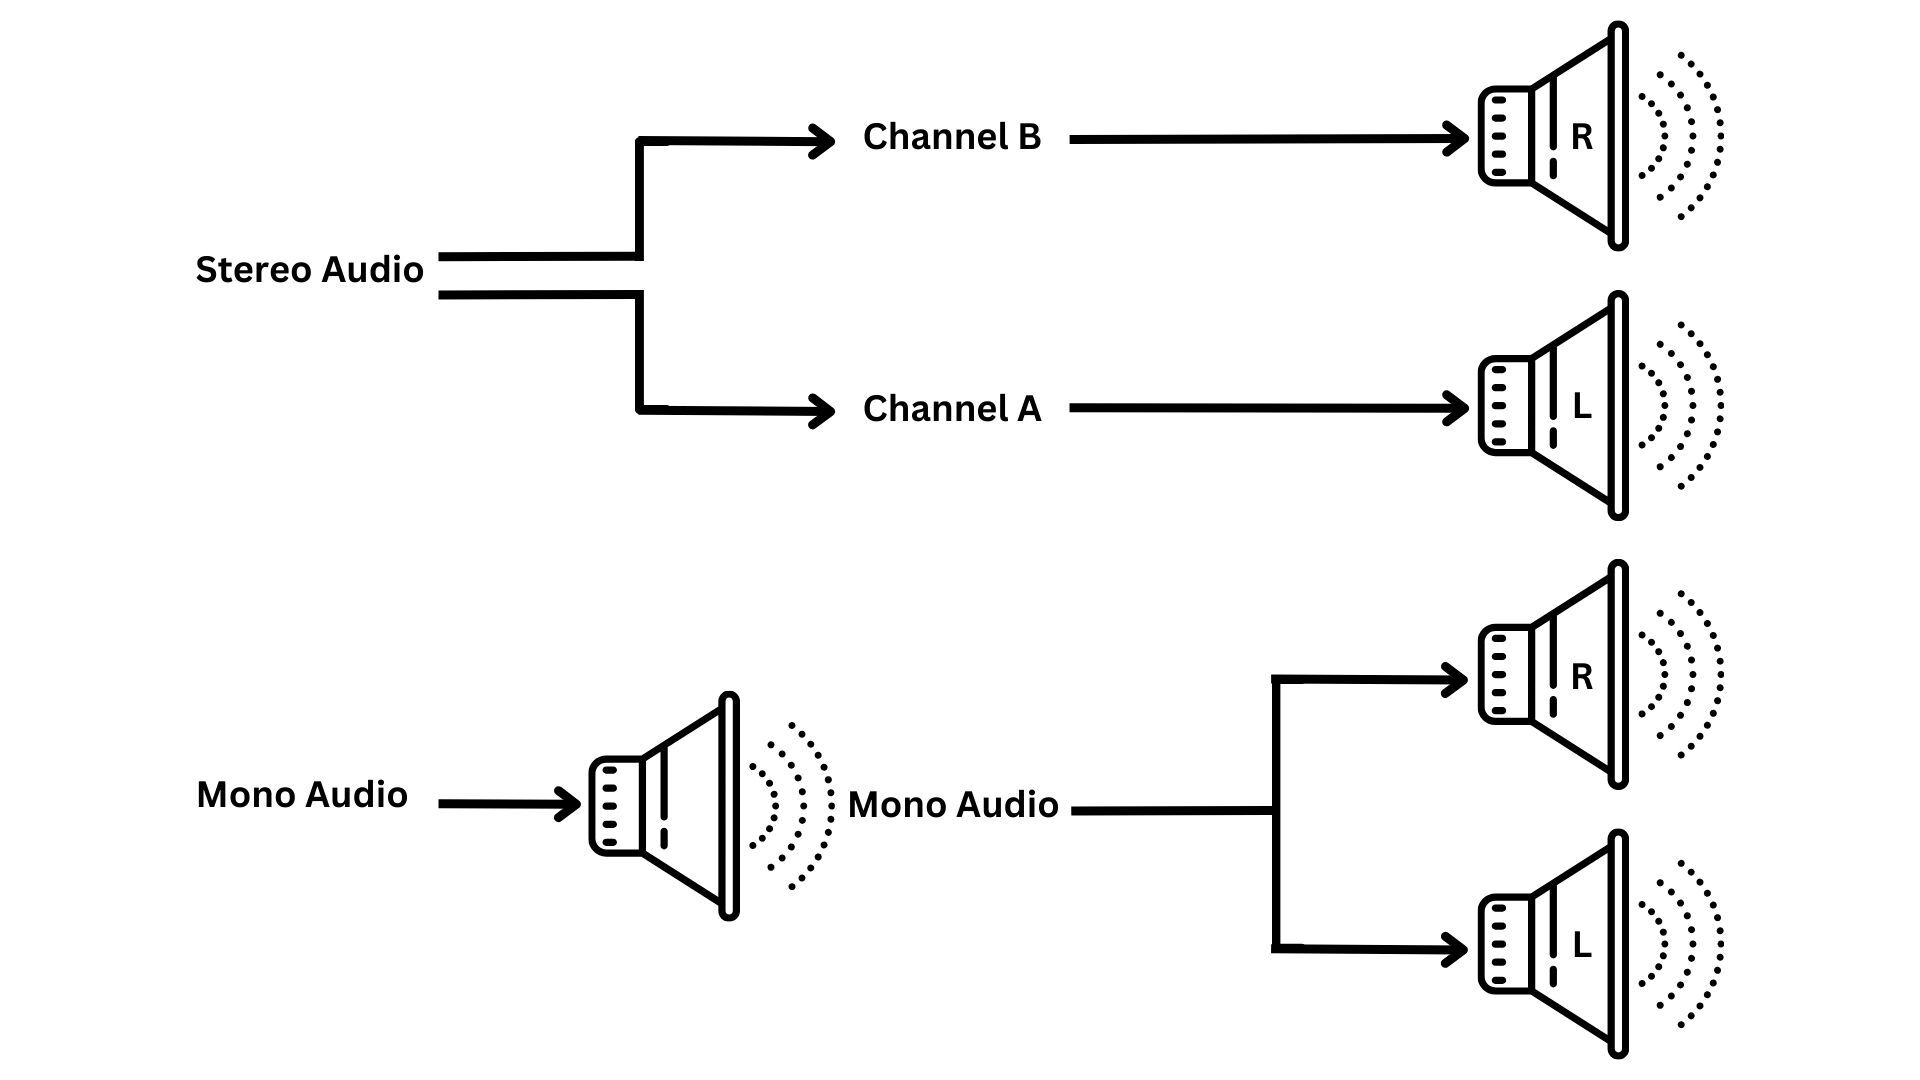 Mono channel configuration